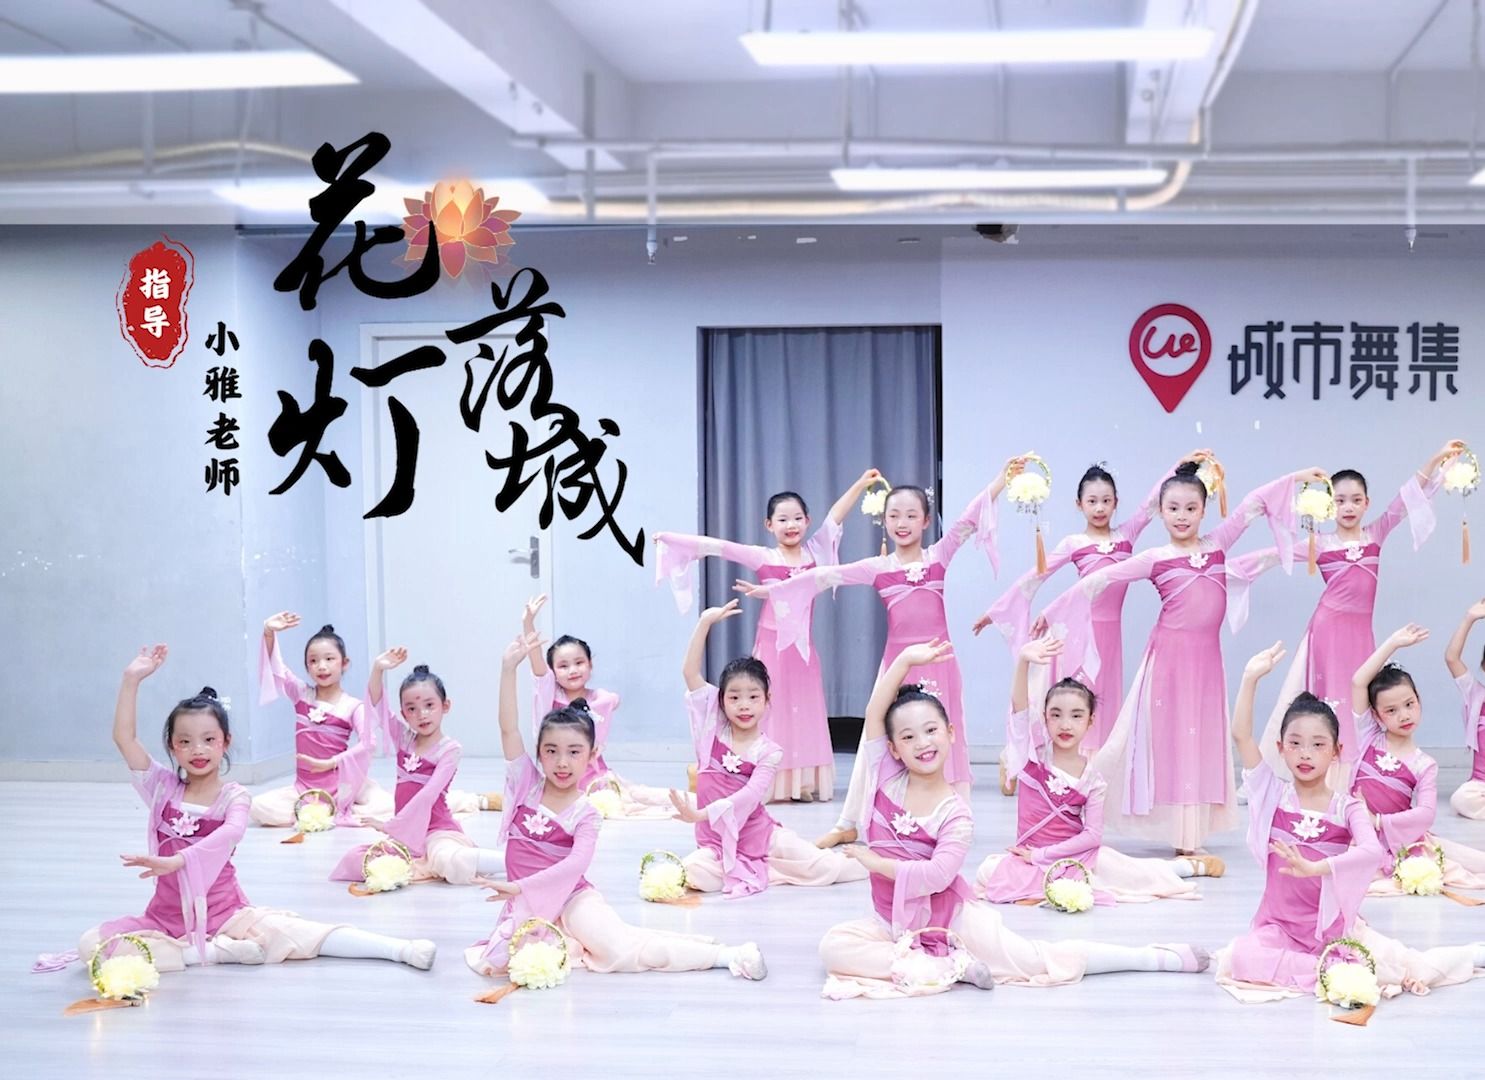 少儿舞蹈推荐《花灯落城》很是可爱的中国舞